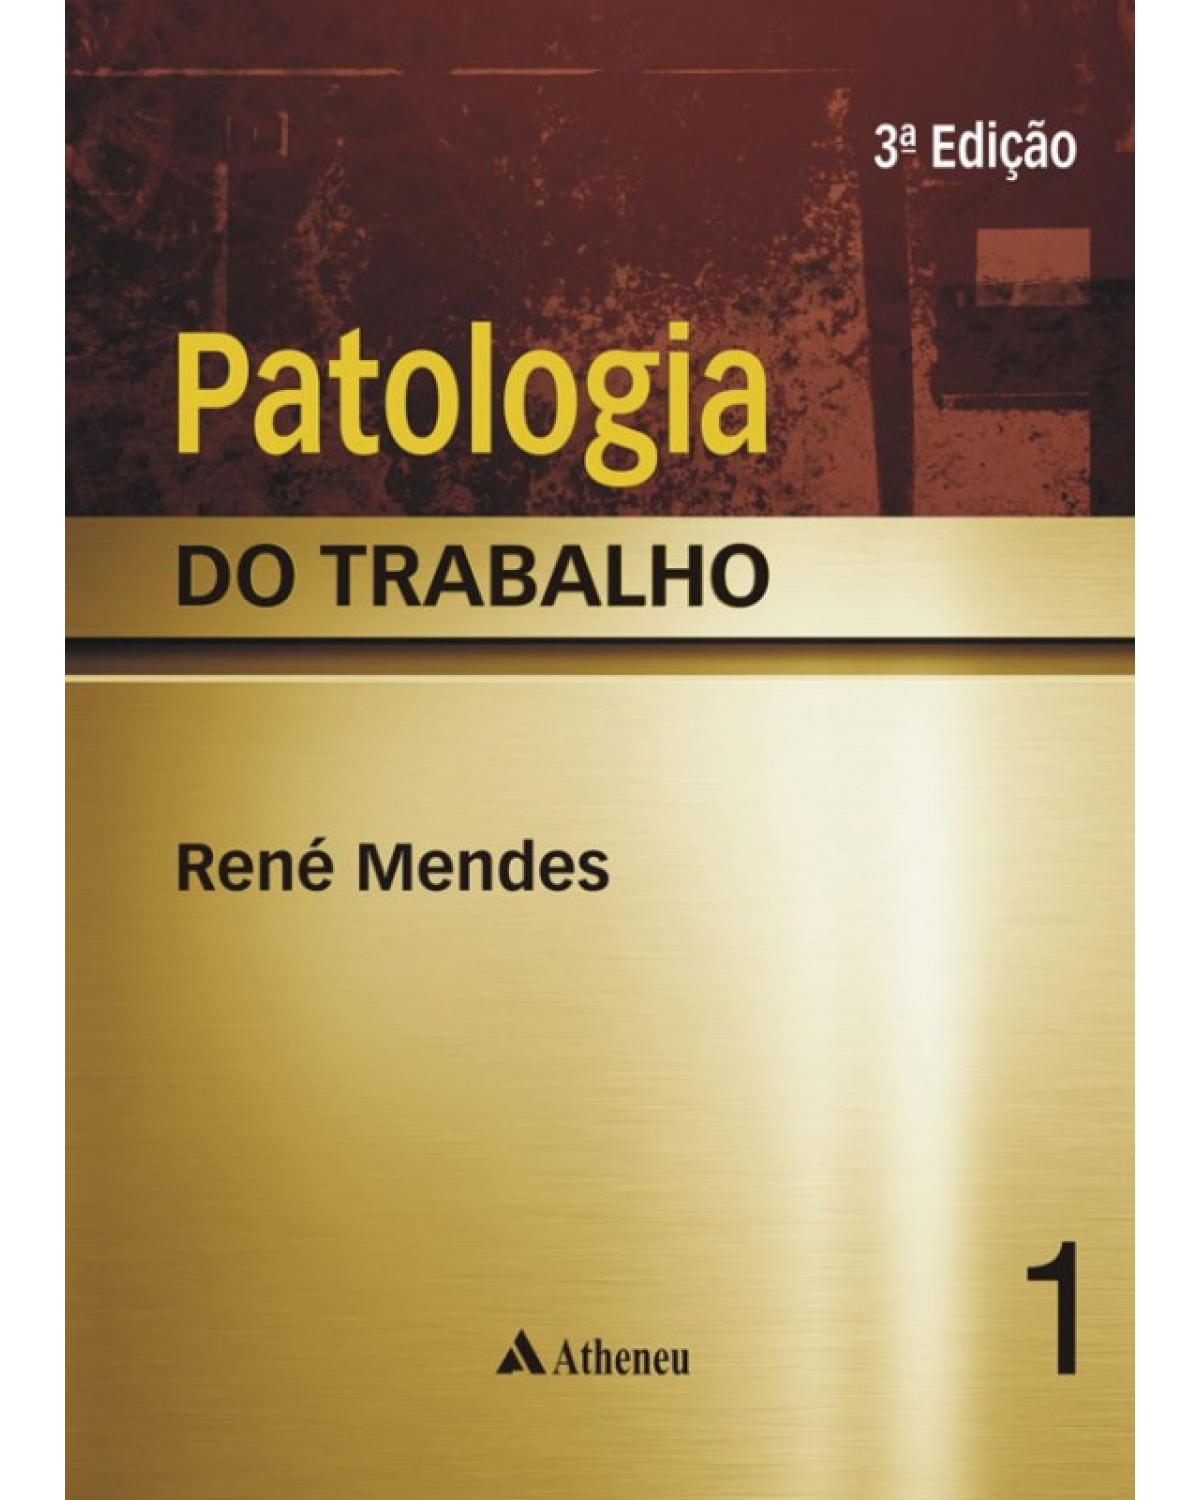 Patologia do trabalho - Vol. 01 e Vol. 02 - 3ª Edição | 2013